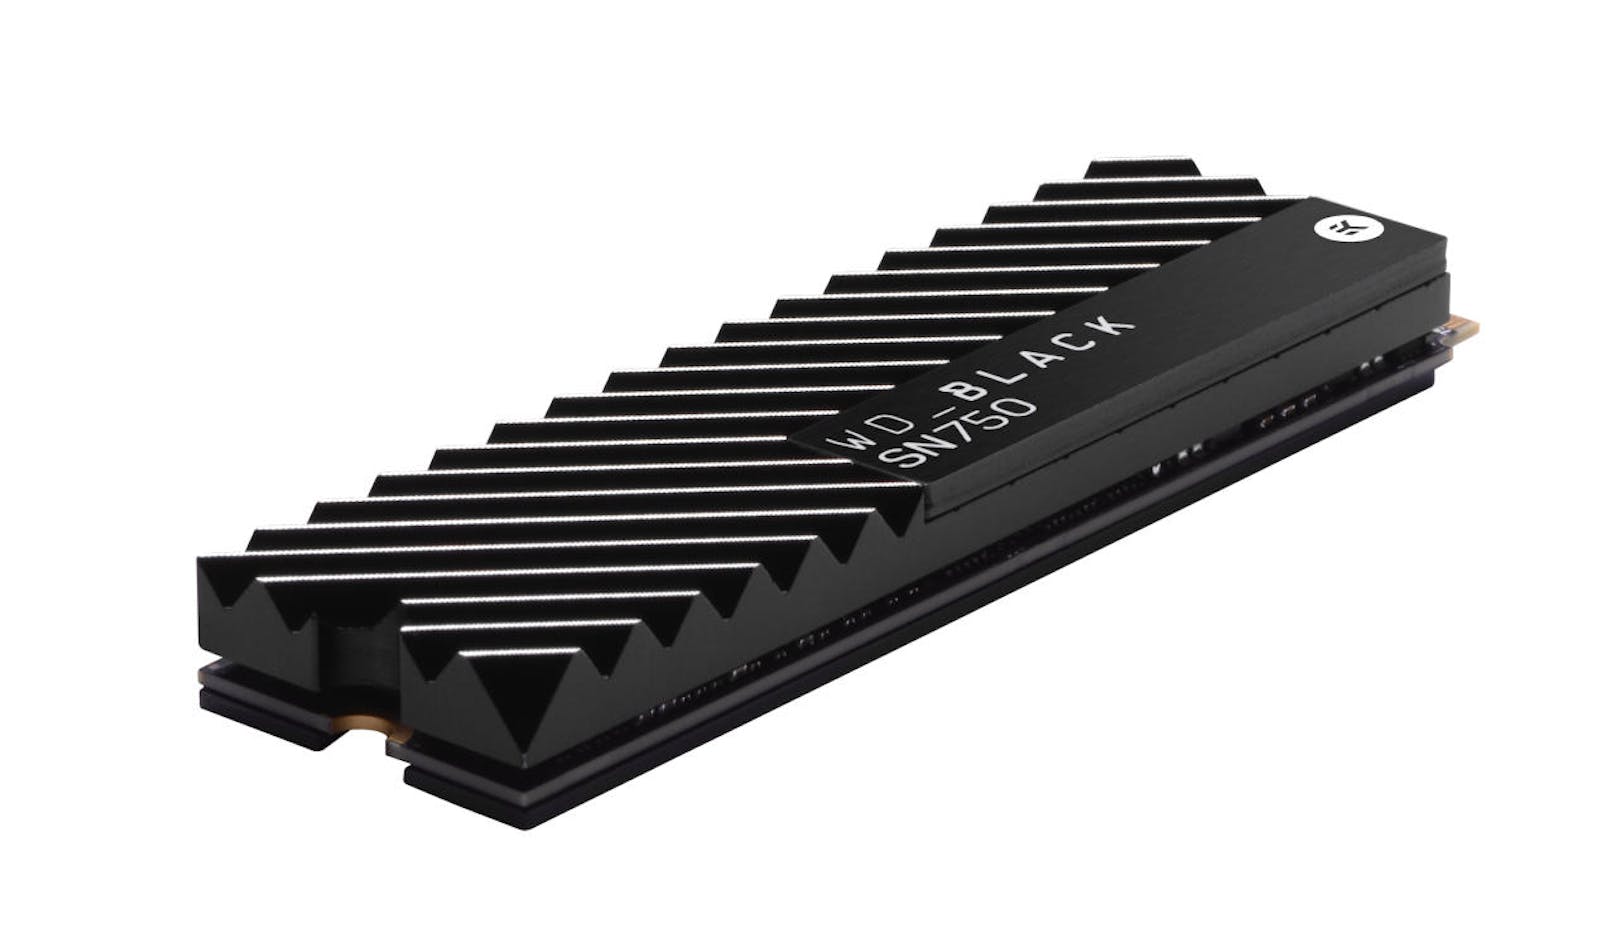 Western Digital Corp. stellt seine WD Black SN750 NVMe SSD der zweiten Generation vor. Mit bis zu 2 TB Speicherkapazität in einem single-sided M.2-Formfaktor ist die WD Black SN750 NVMeTM SSD insbesondere für Desktop- und Eigenbau-PCs geeignet, die über ein integriertes Kühlsystem verfügen, um stabile Leistung und niedrige Temperaturen zu gewährleisten. Diese verbesserte SSD verschafft Spielern und Hardware-Enthusiasten einen spürbaren Vorteil. Die WD Black SN750 NVMe SSD bietet eine fünfjährige, eingeschränkte Garantie mit bis zu 600TBW Lebensdauer für das 1TB-Modell und bis zu 1200TBW für das kommende 2TB-Modell. Preis: ab 89,99 Euro.